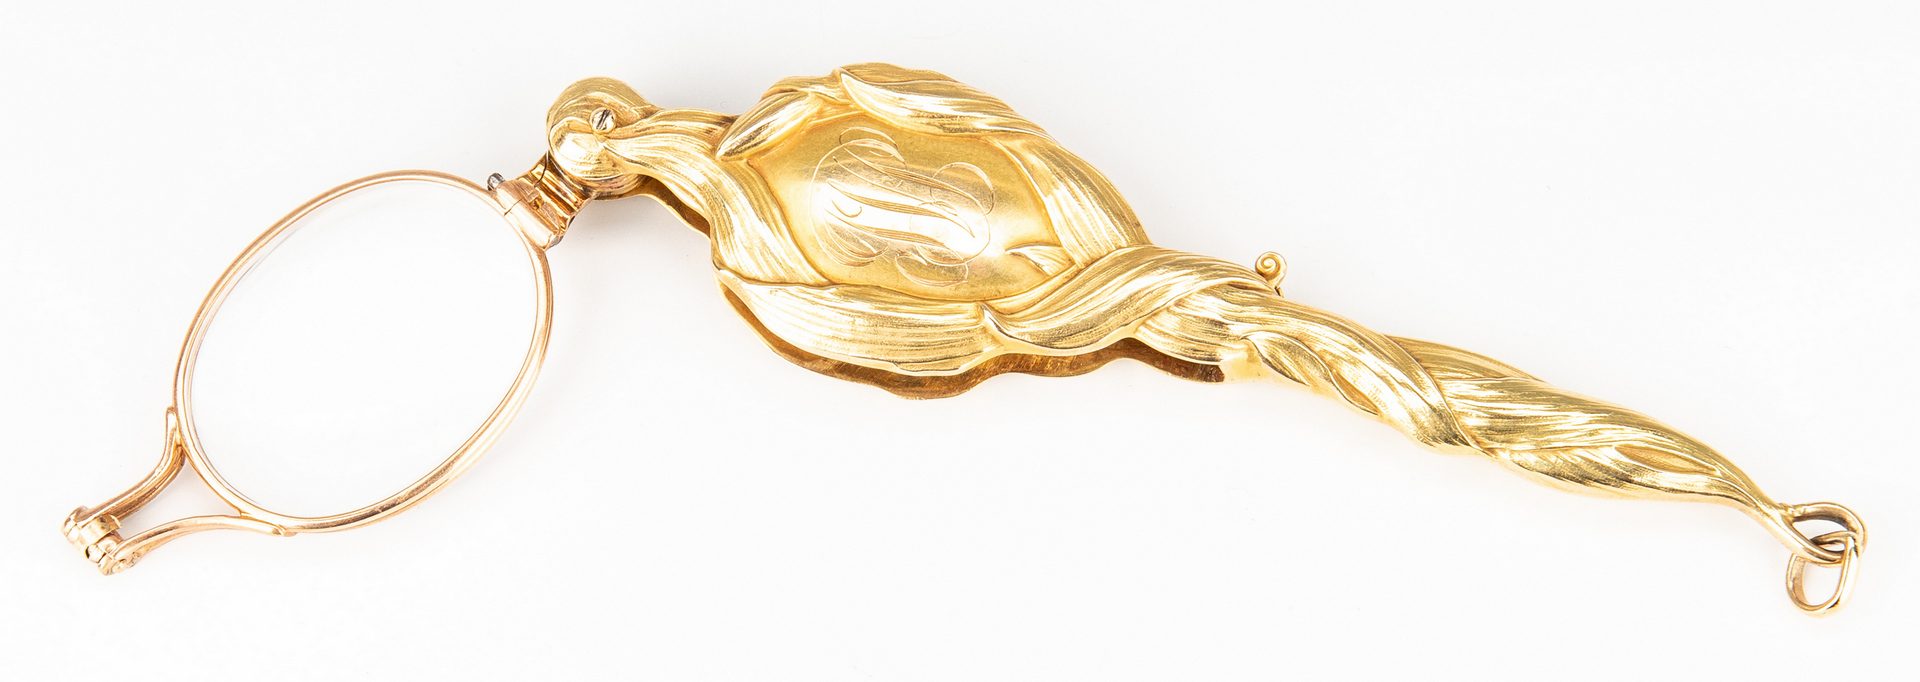 Lot 182: Art Nouveau Gold Lorgnette